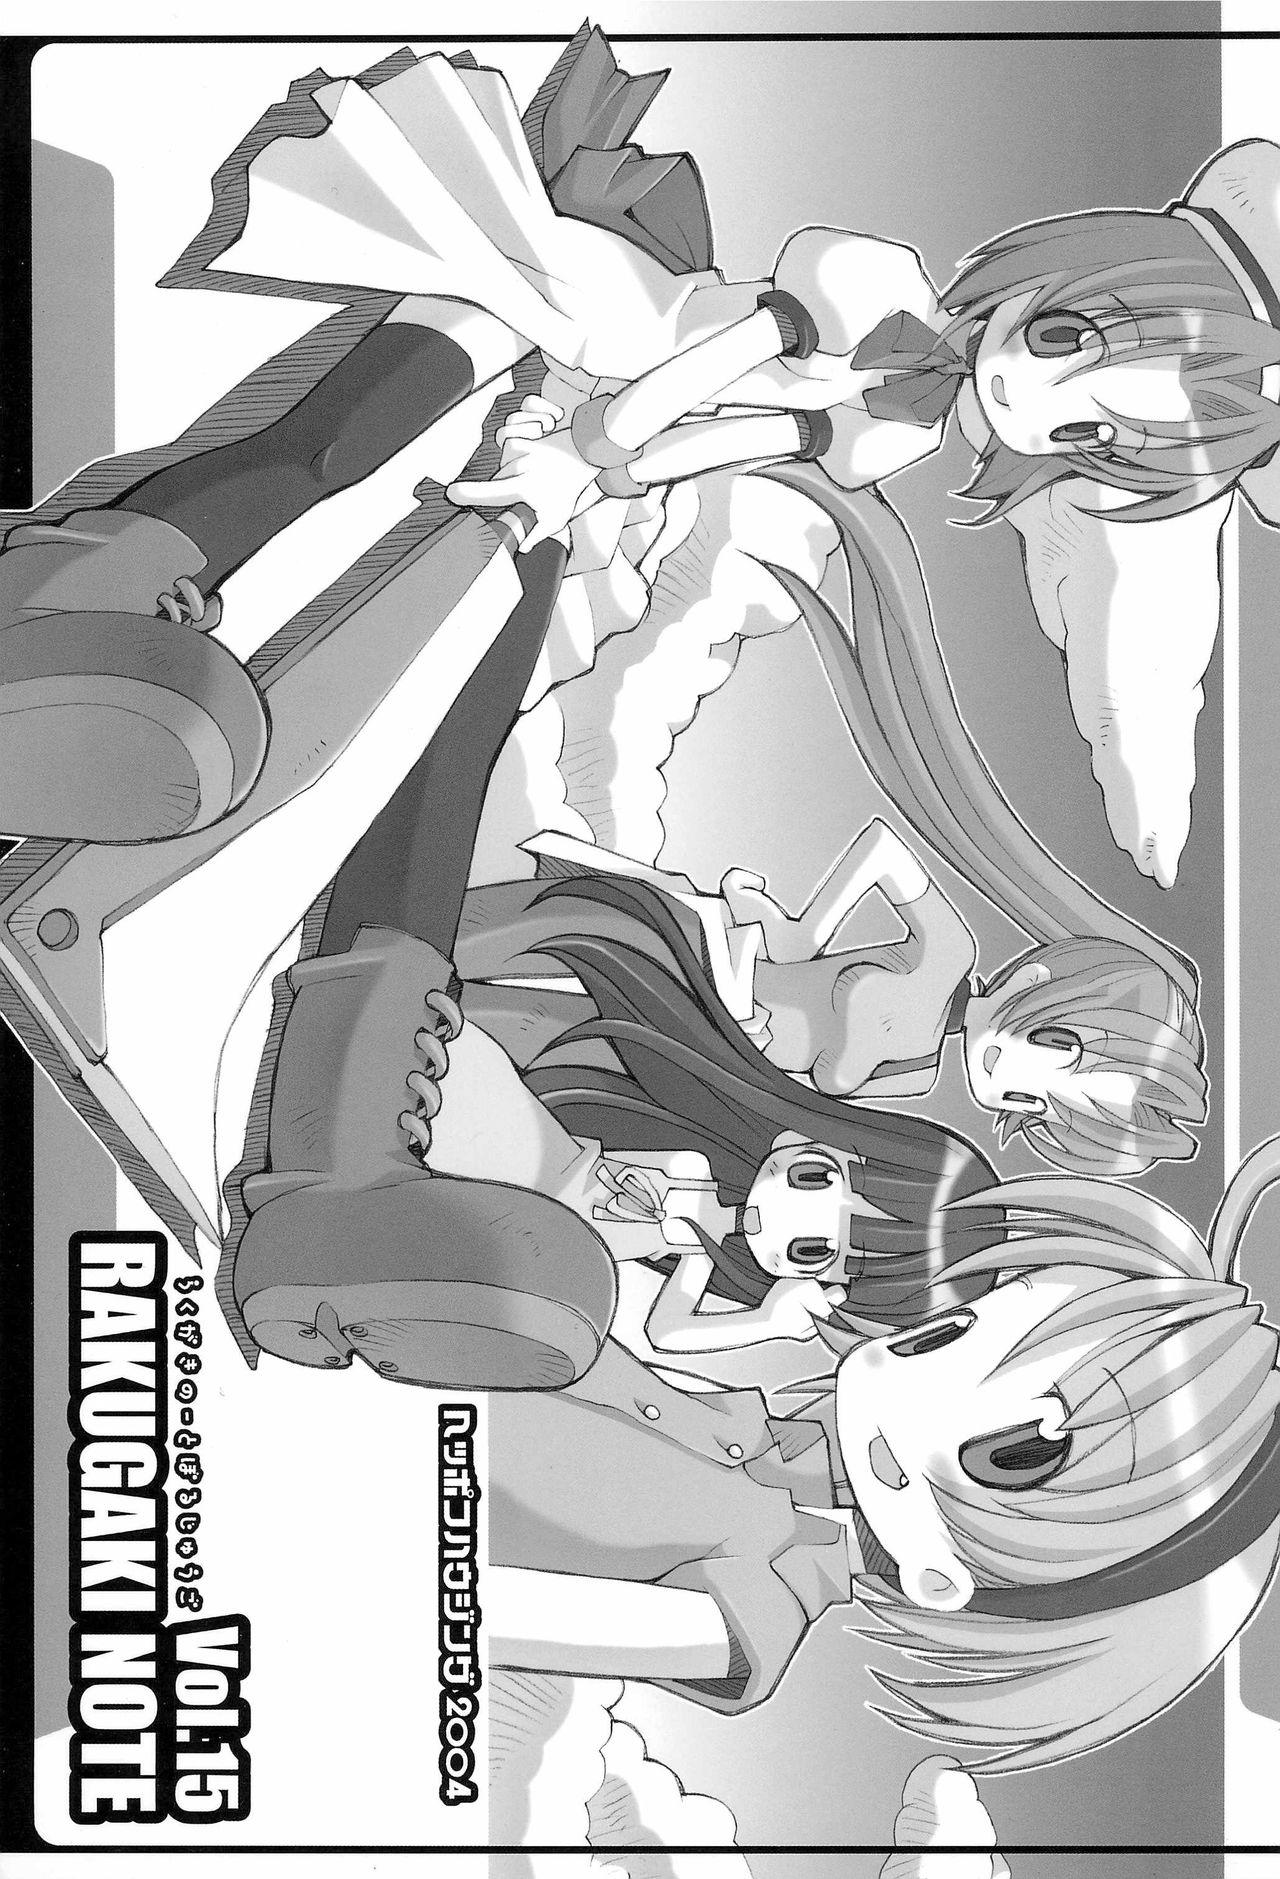 Whores RAKUGAKI NOTE vol.15 - Higurashi no naku koro ni Jeans - Page 1